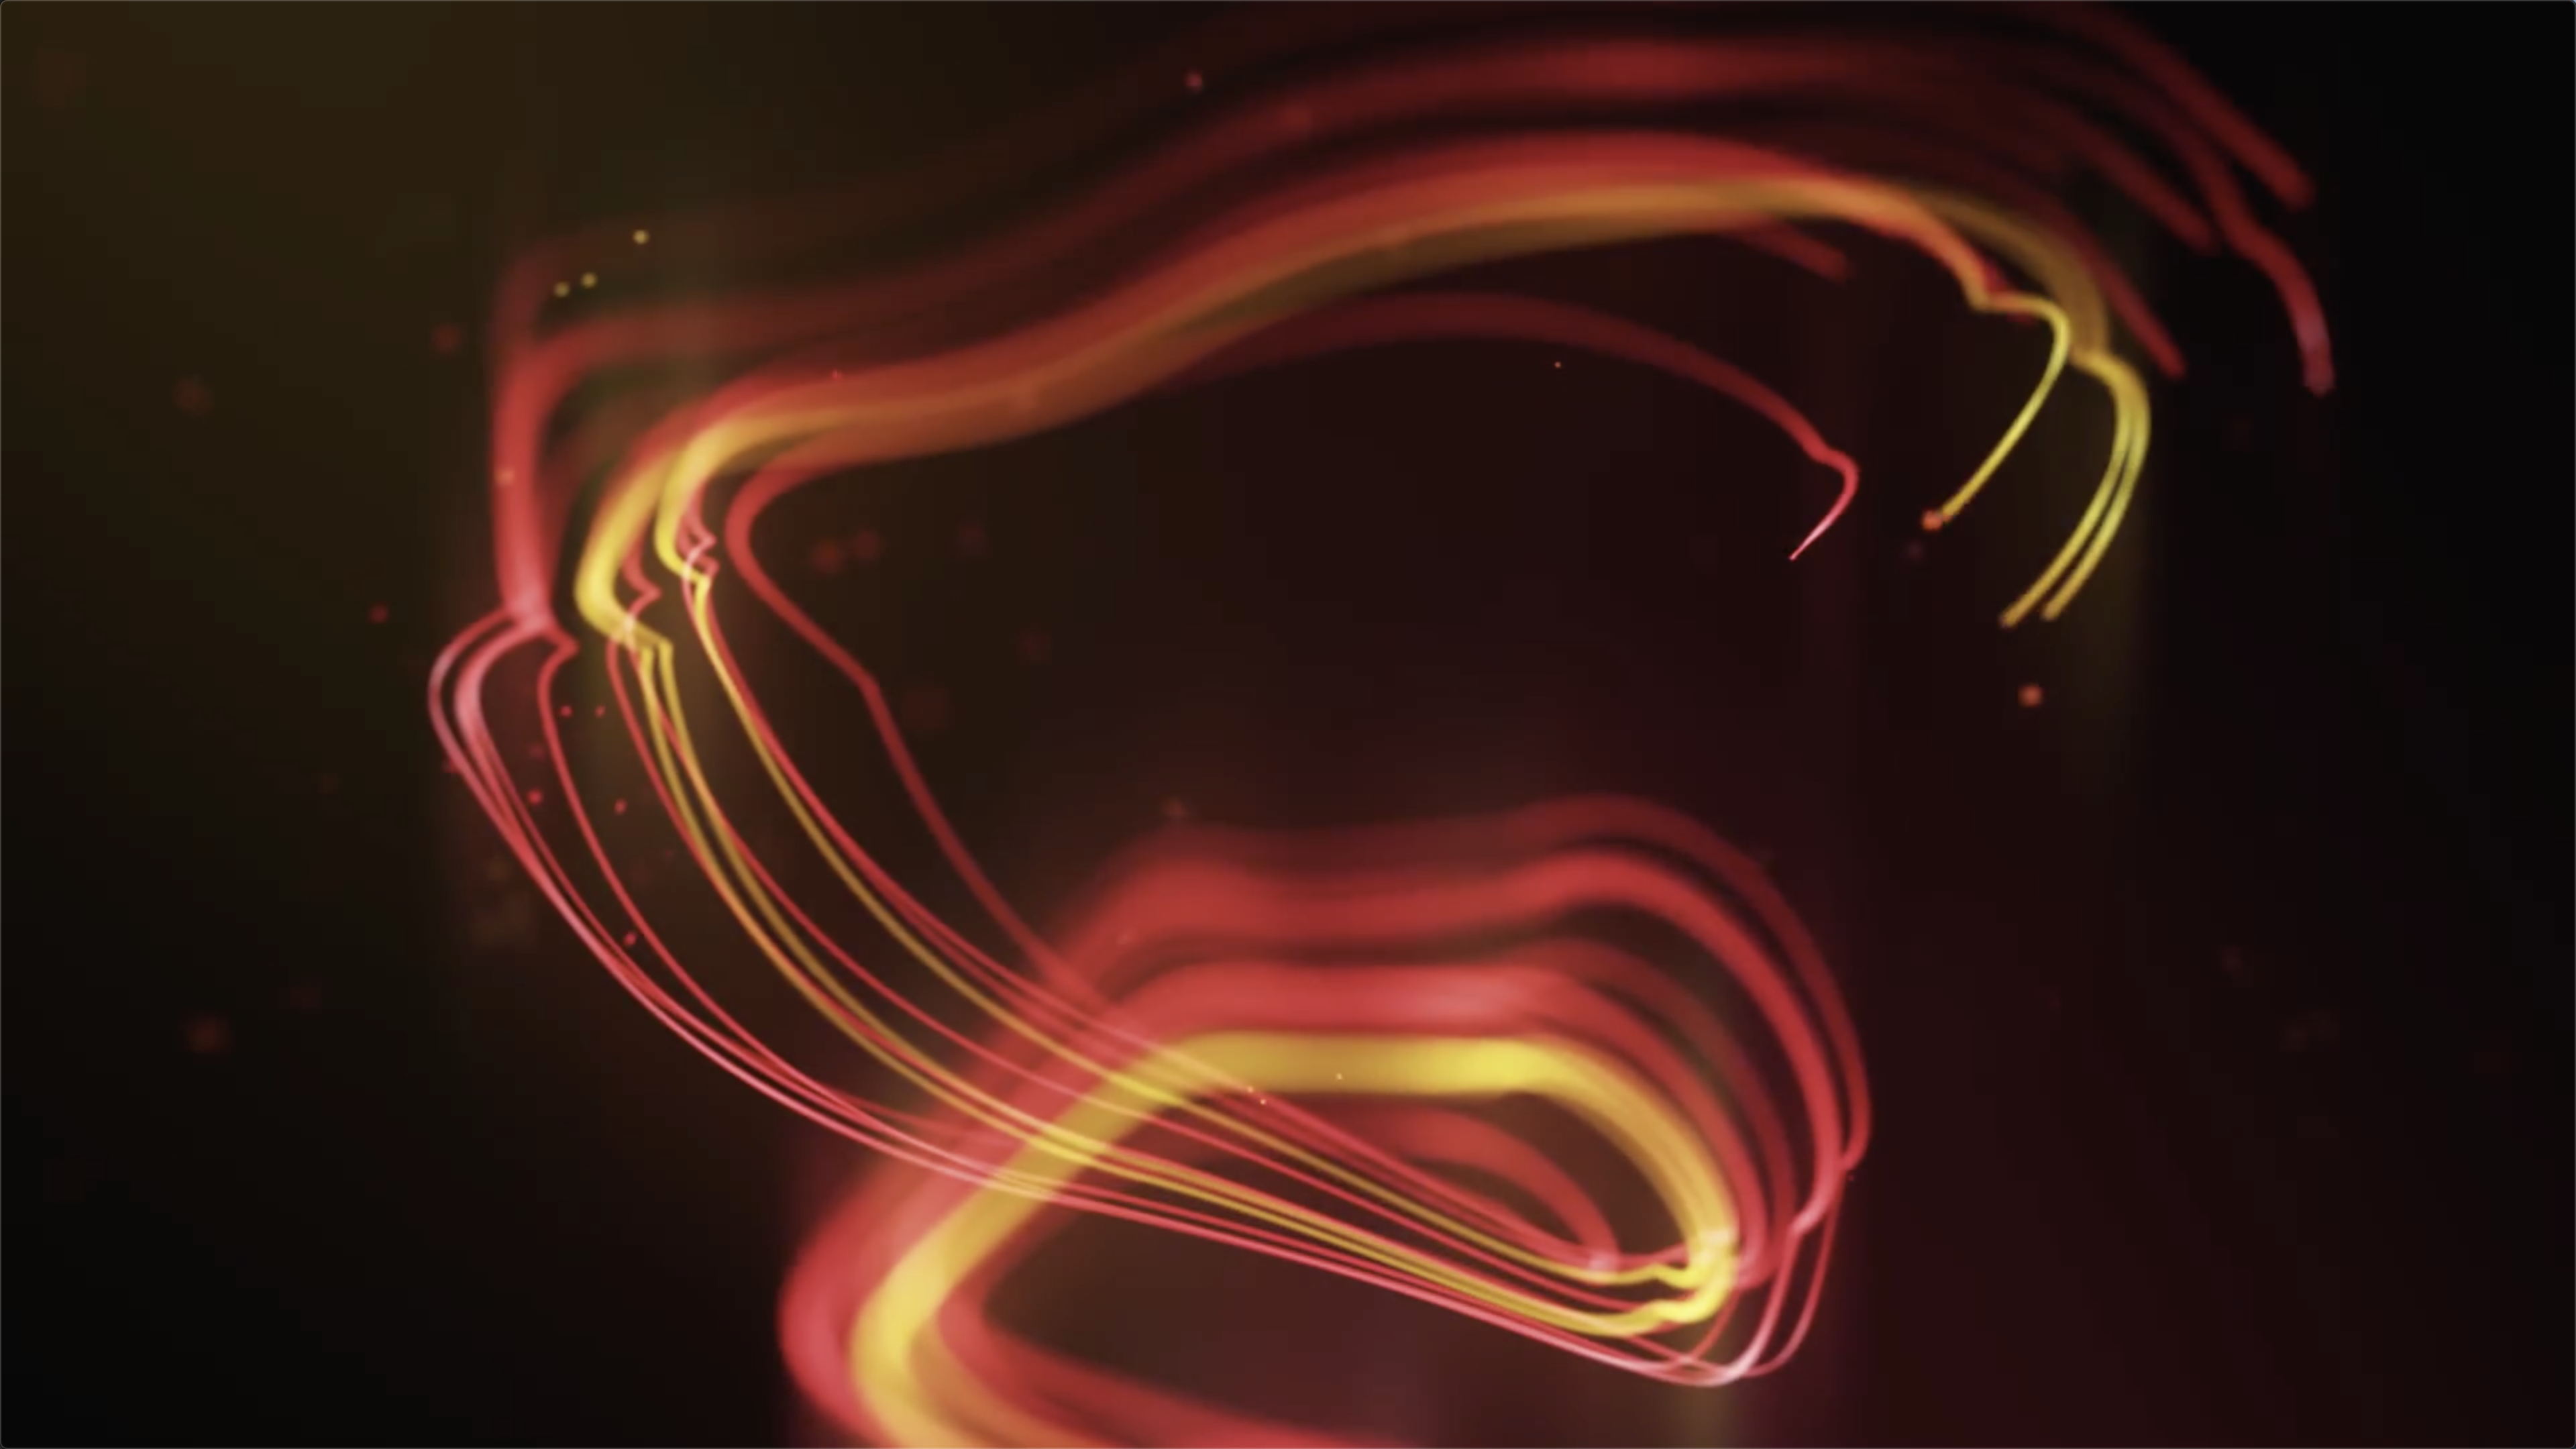 Swirl Light Trails Backgrounds(10组抽象漂亮彩色粒子线条背景叠加动画 )高清视频素材